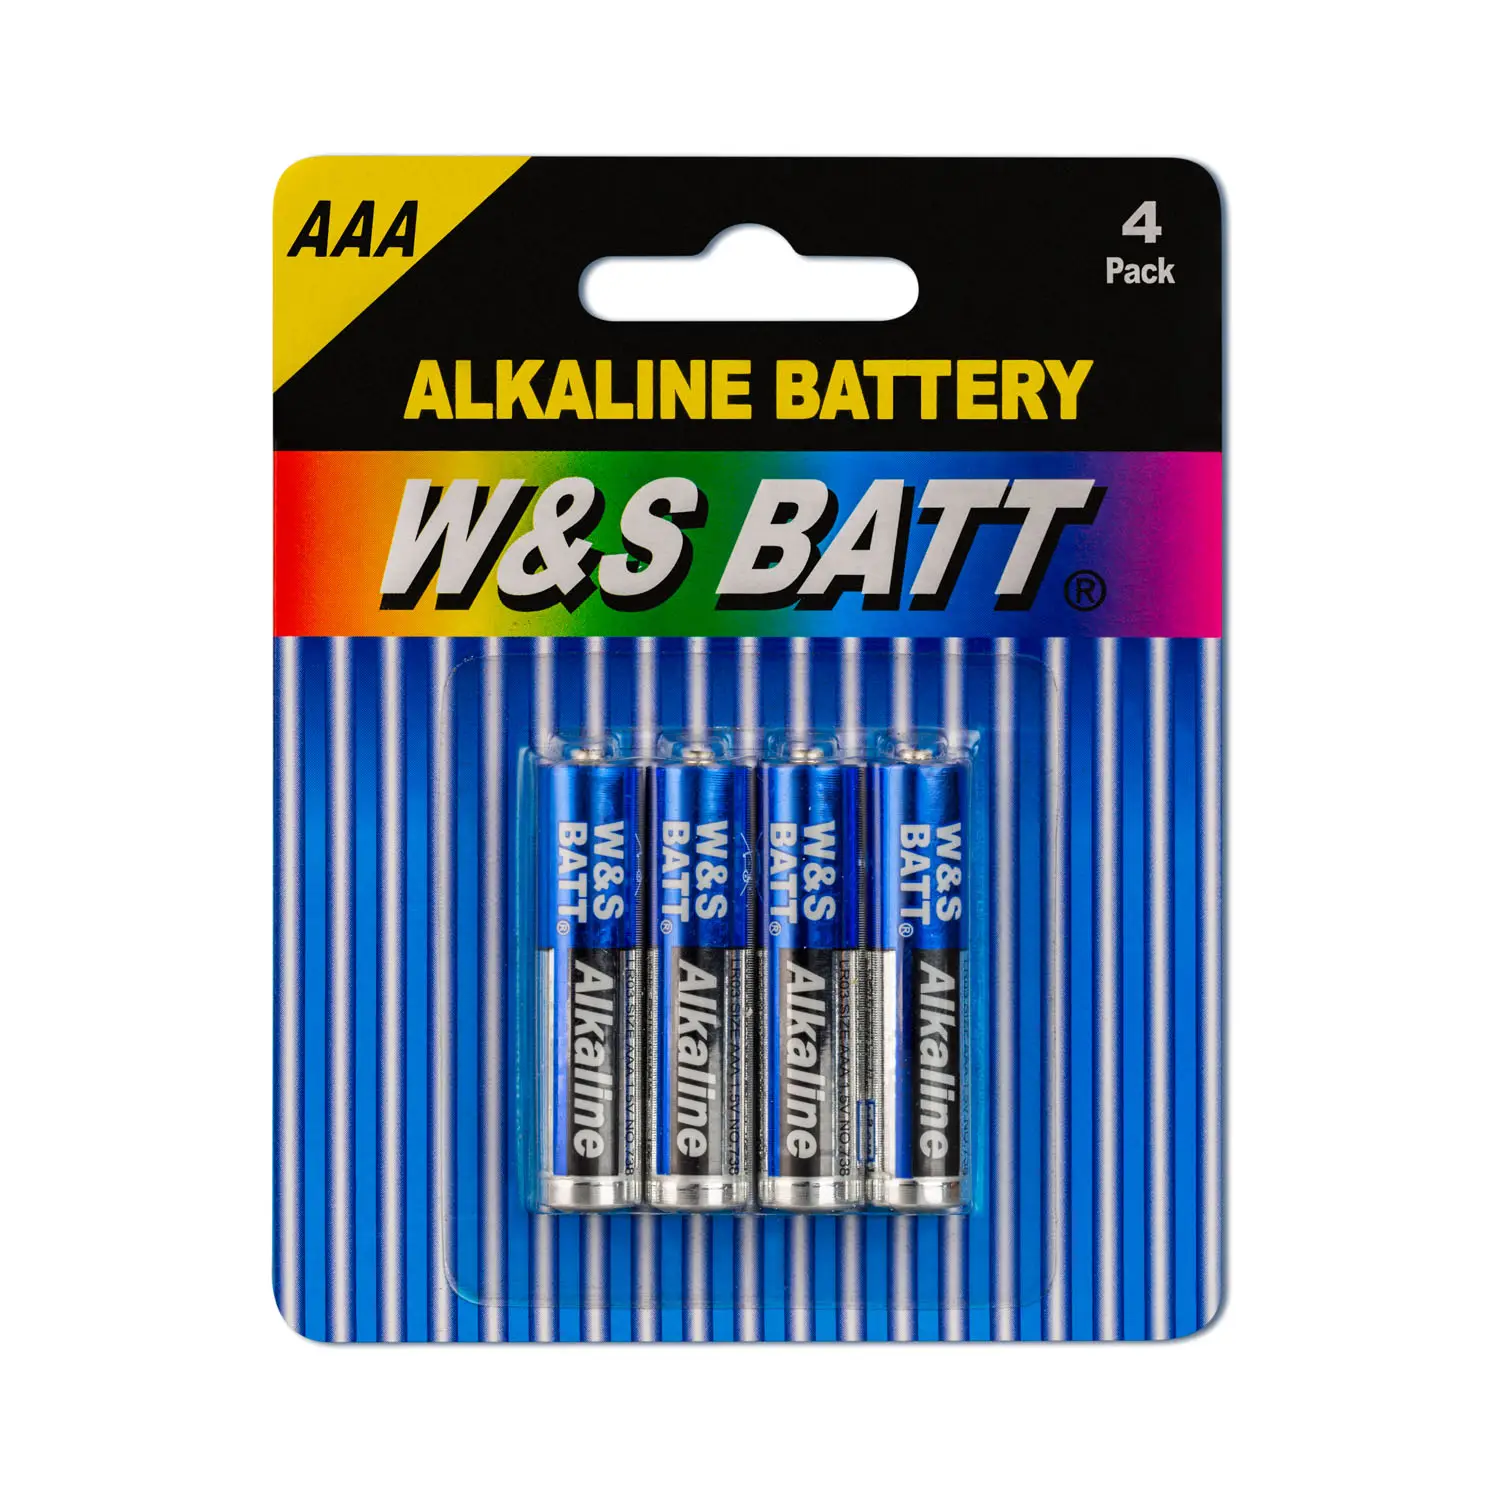 En iyi kalite W & S BATT marka alkalin pil LR03 AAA